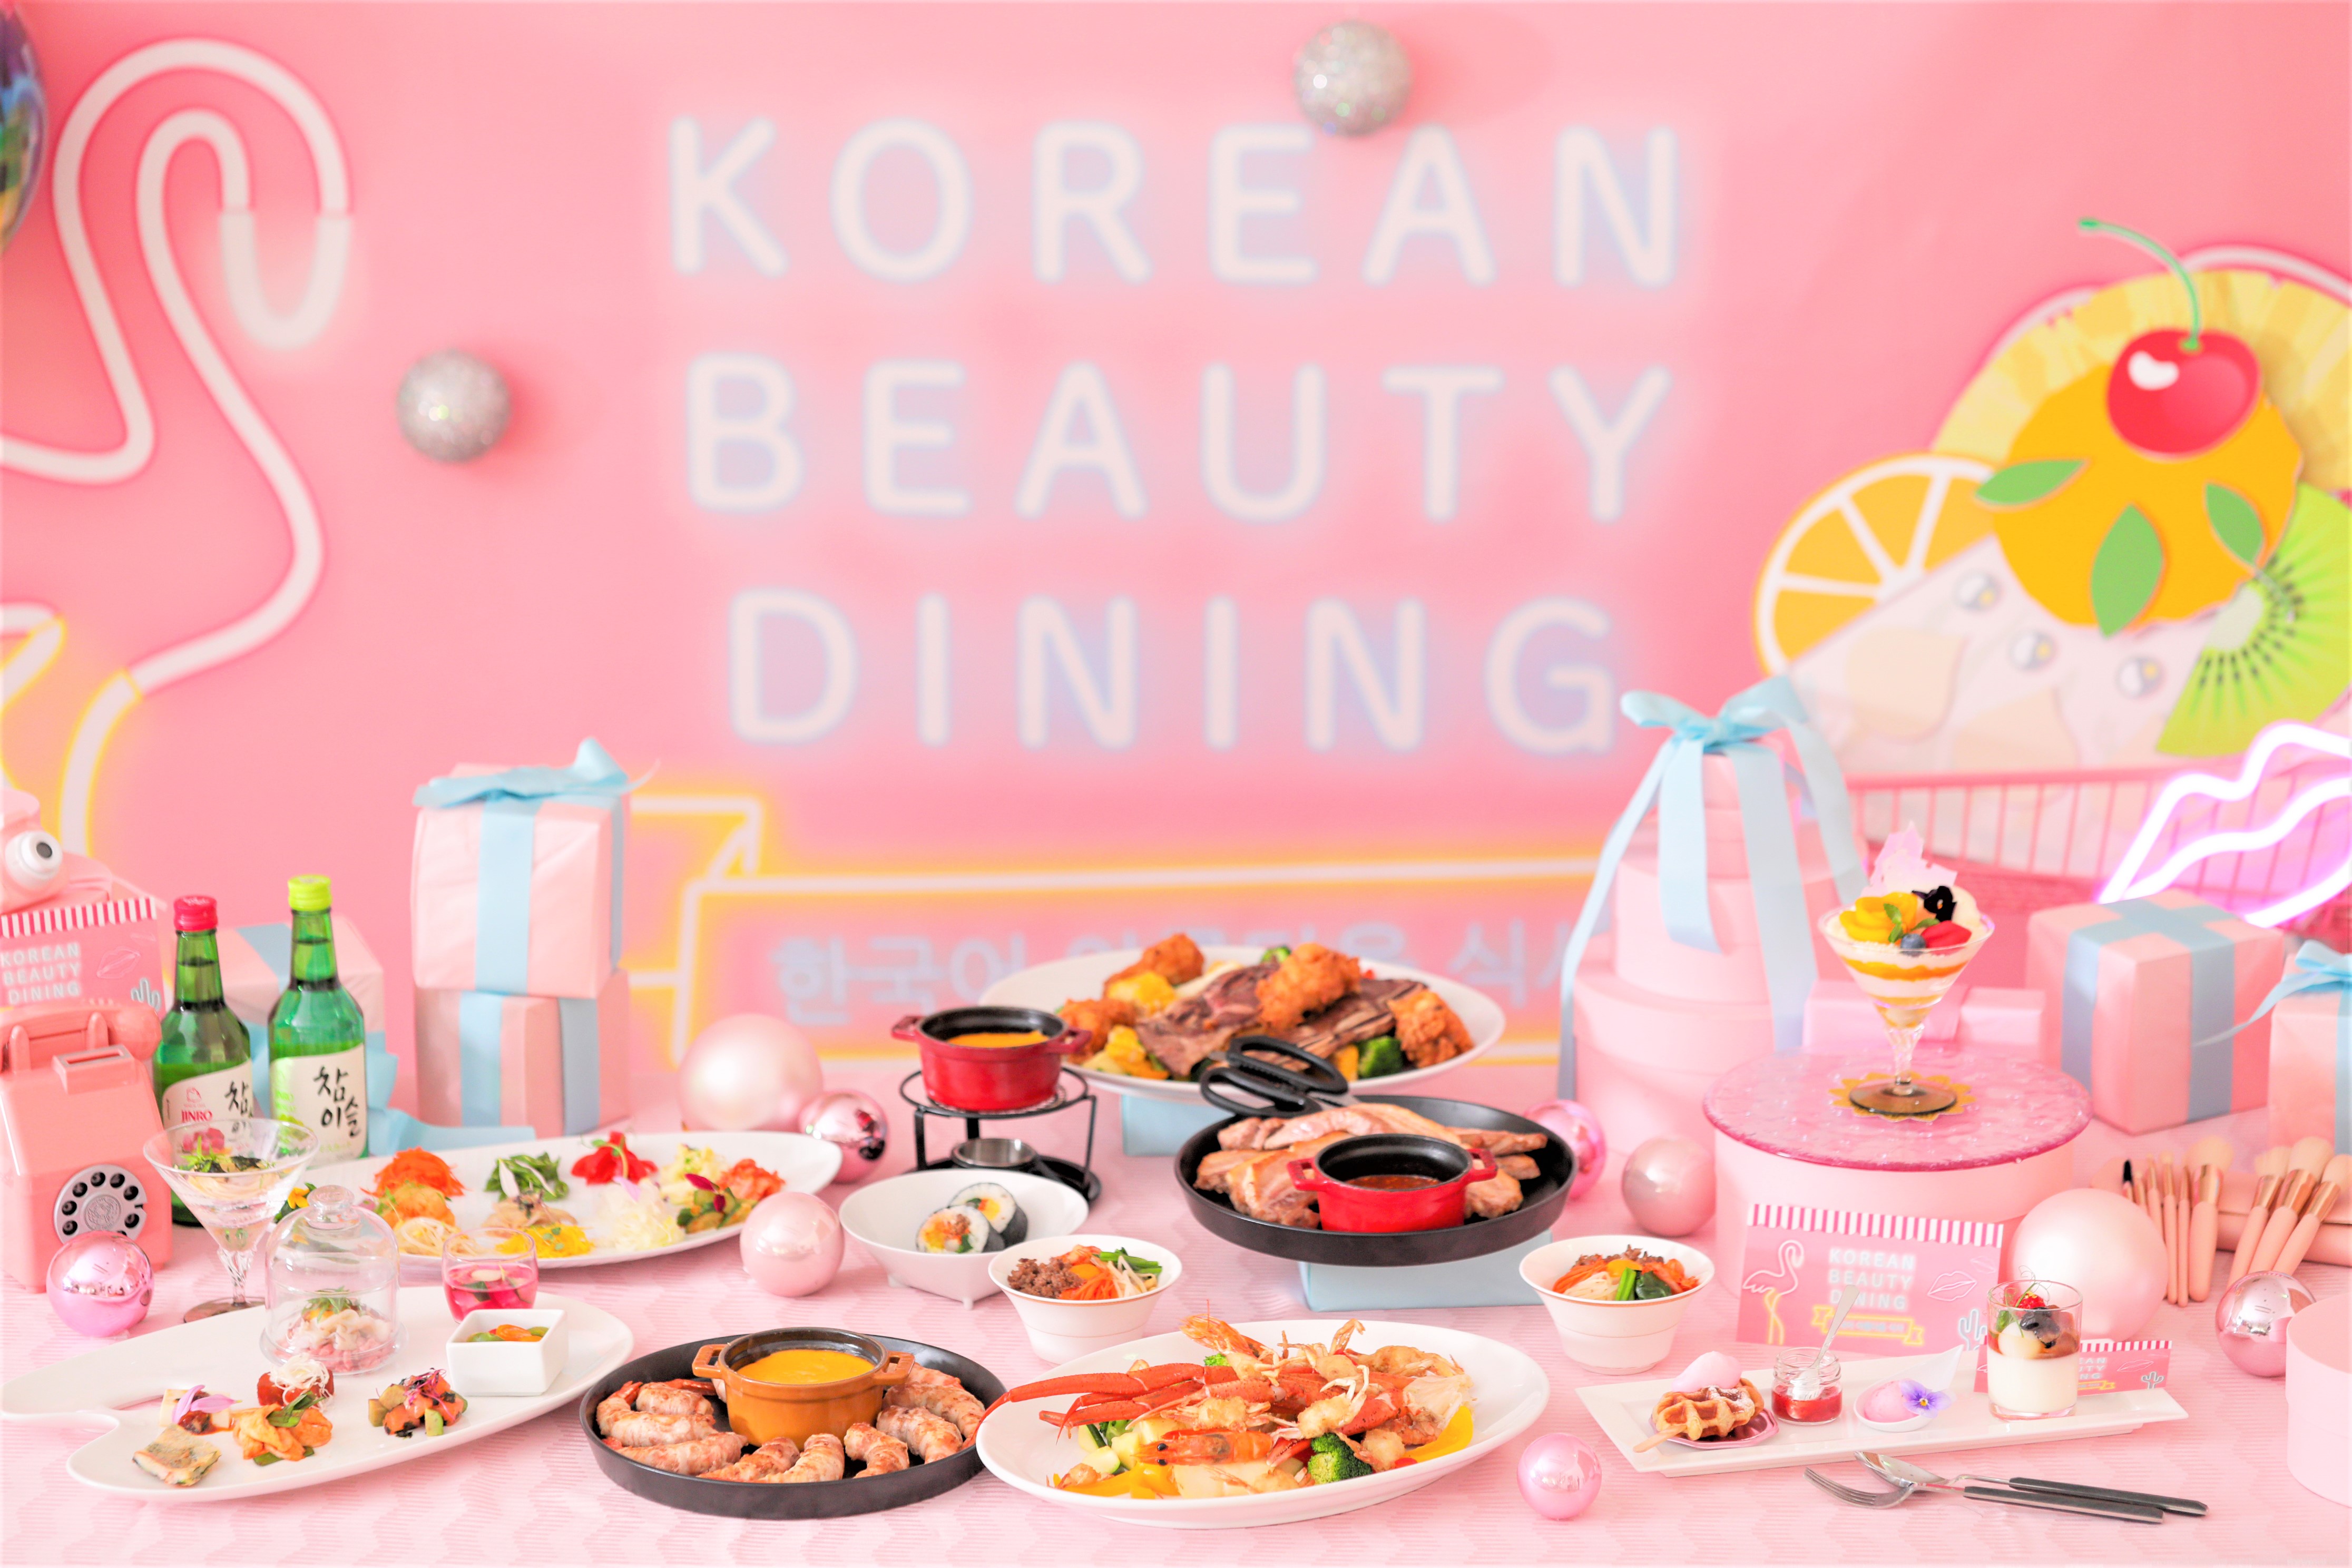 名古屋で おしゃれでかわいい 韓国を体感できる料理 スイーツ 空間が楽しめるイベント Korean Beauty Dining 開催 Newscast